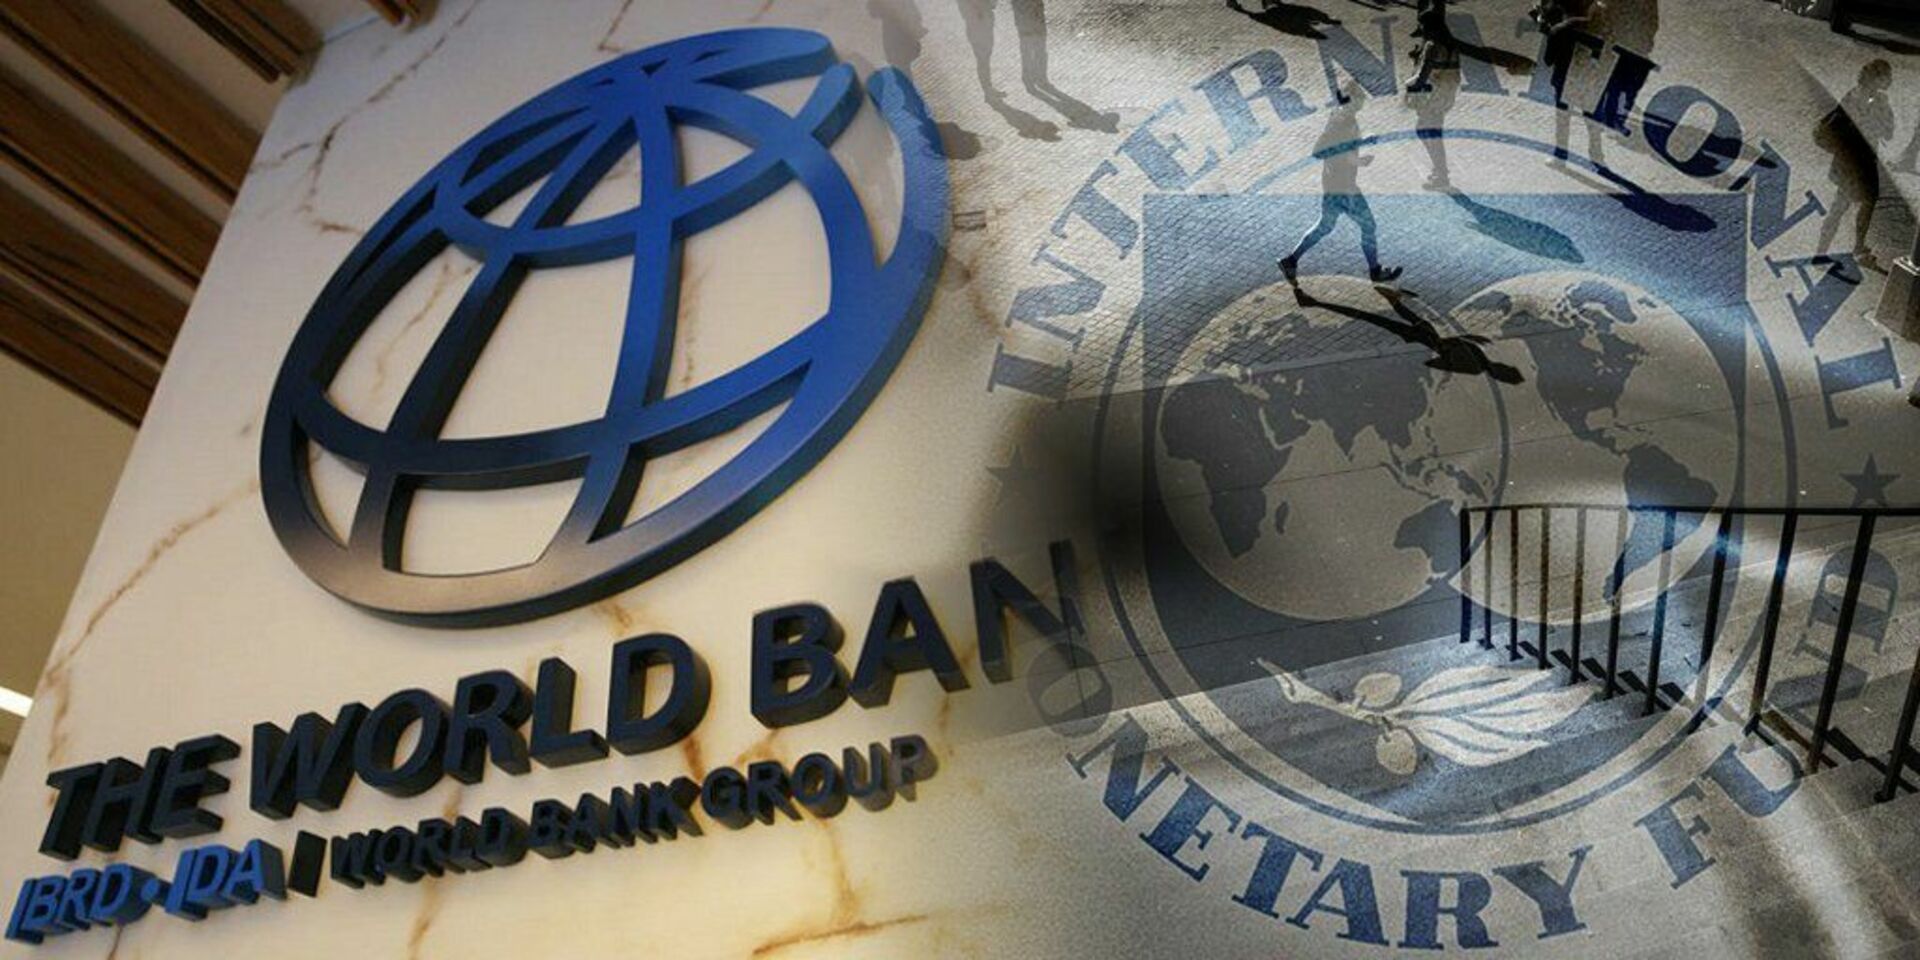 Фонд всемирный банк. МВФ И Всемирный банк. Международный валютный фонд и группа Всемирного банка. Всемирного банка МВФ. Всемирный банк ООН.